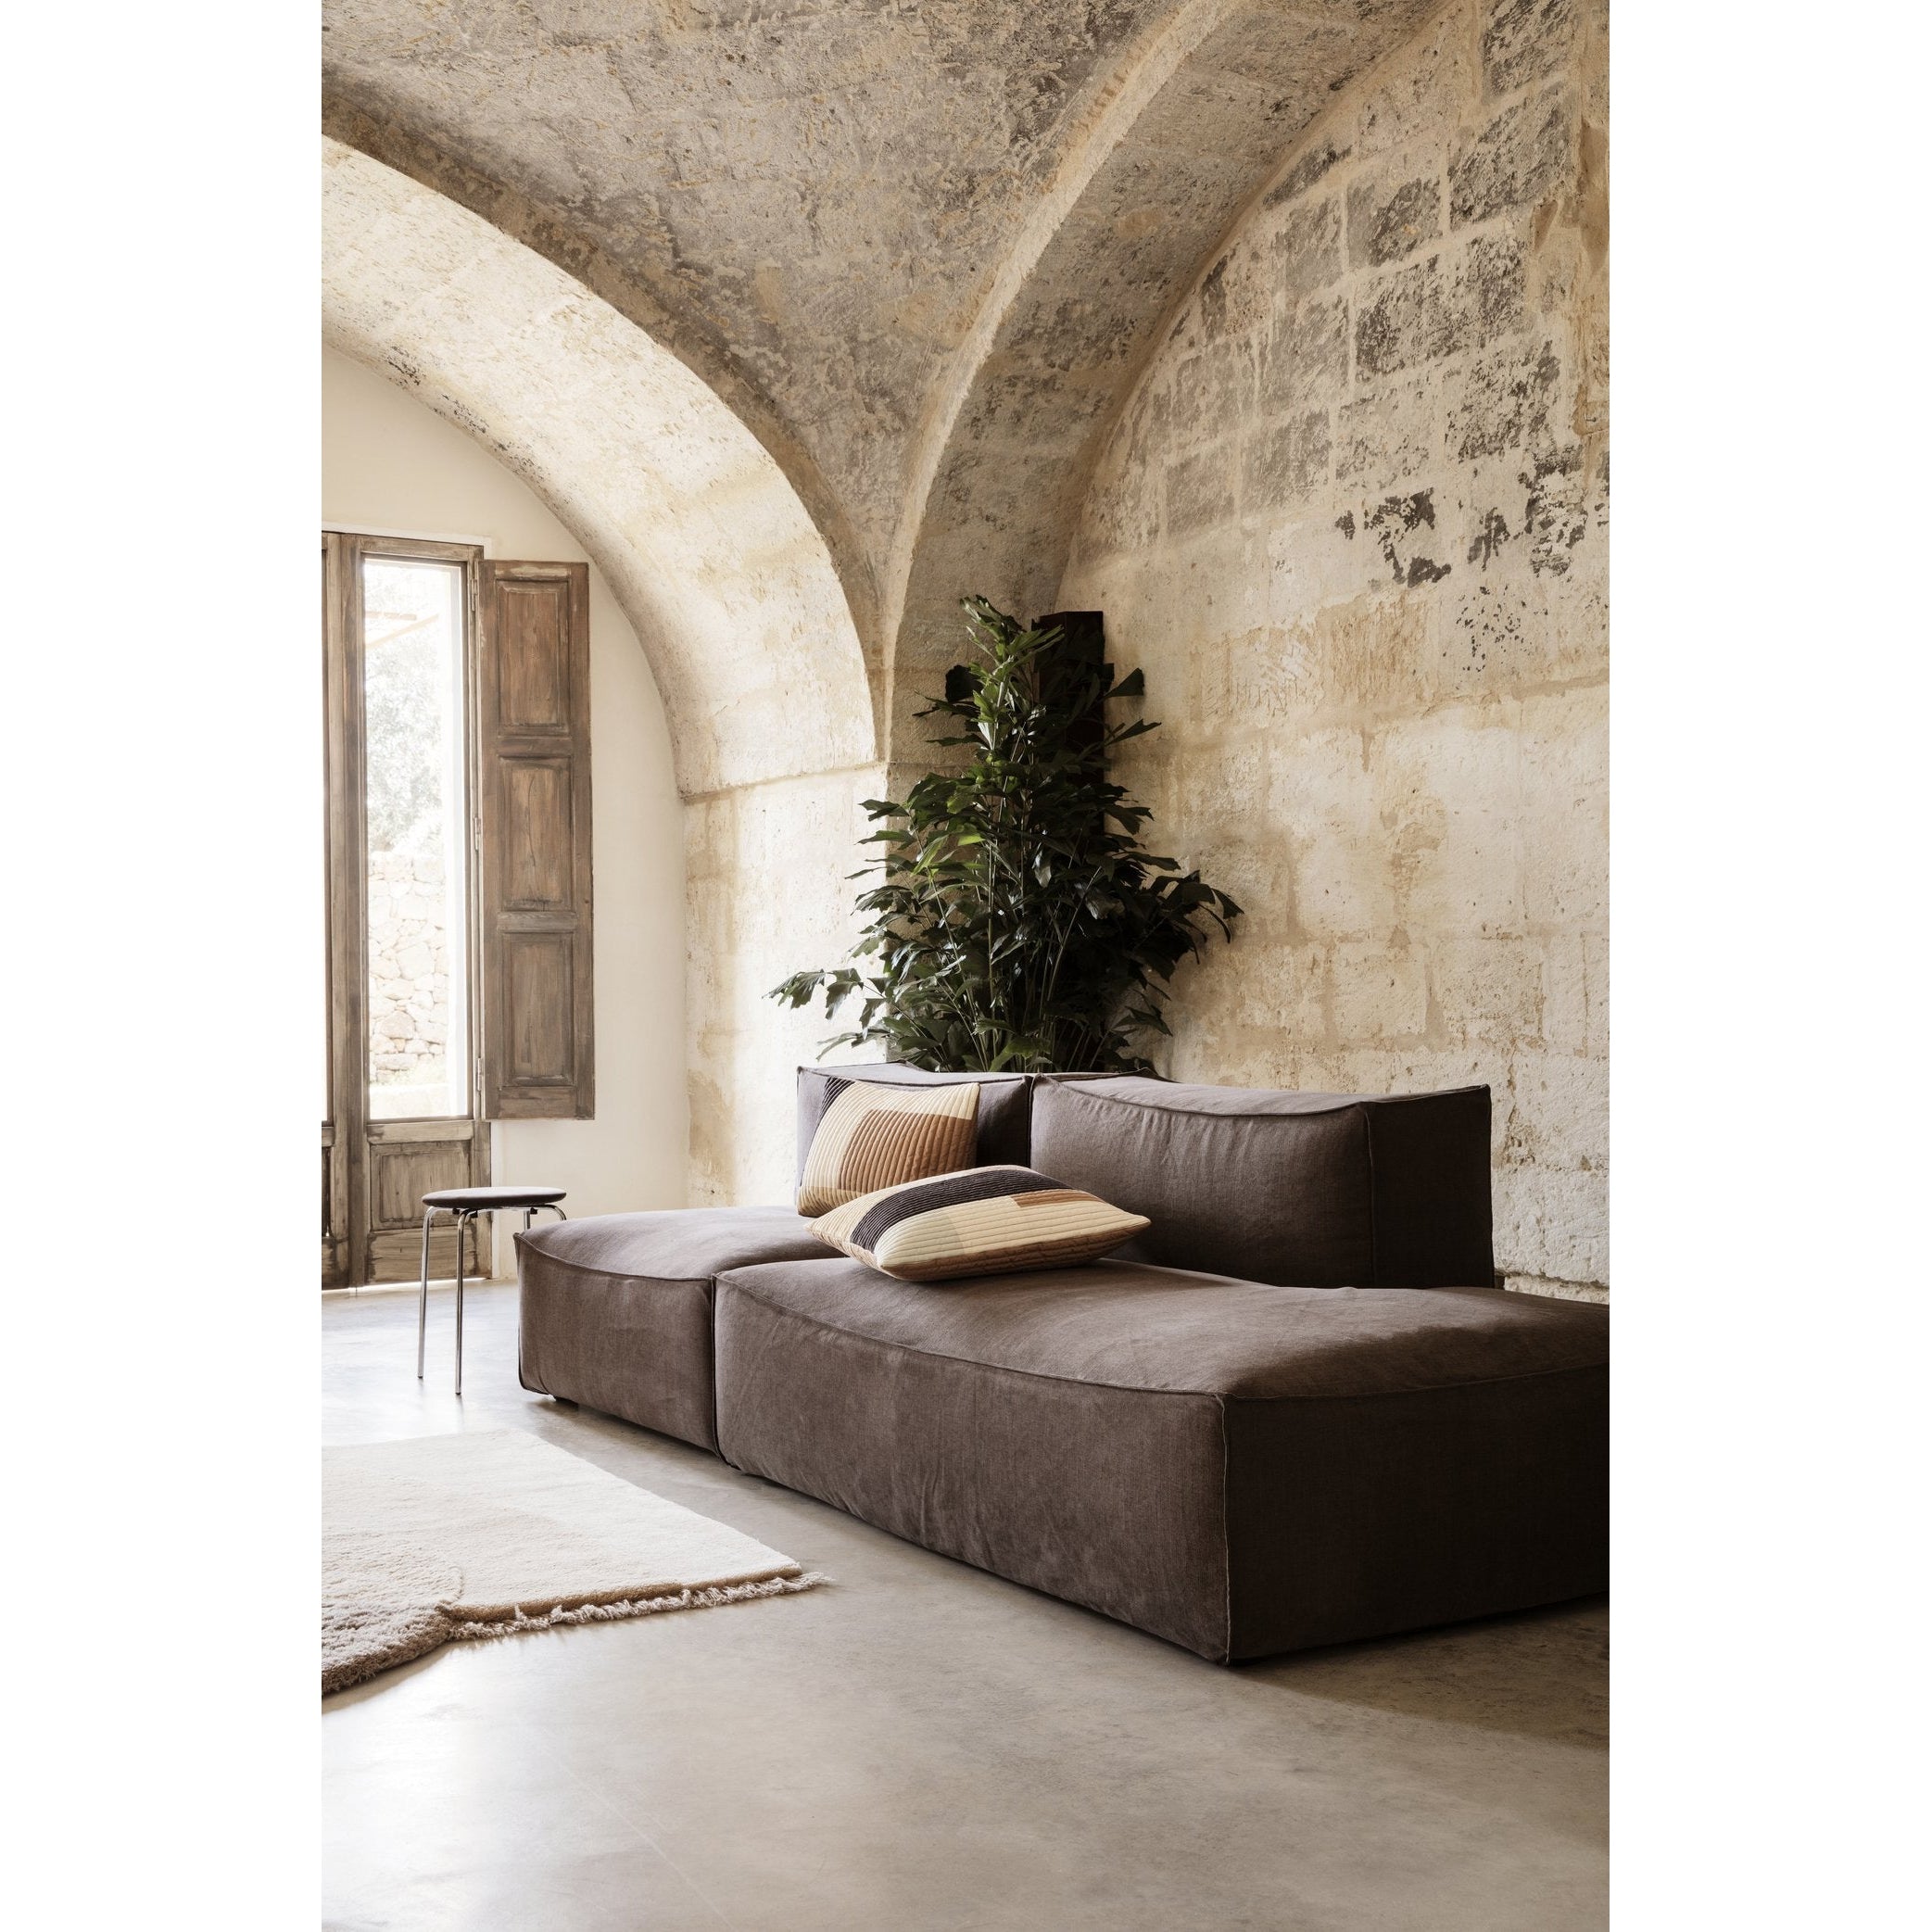 Ferm Living Quilt Cushion XL D Grön 80 x 50